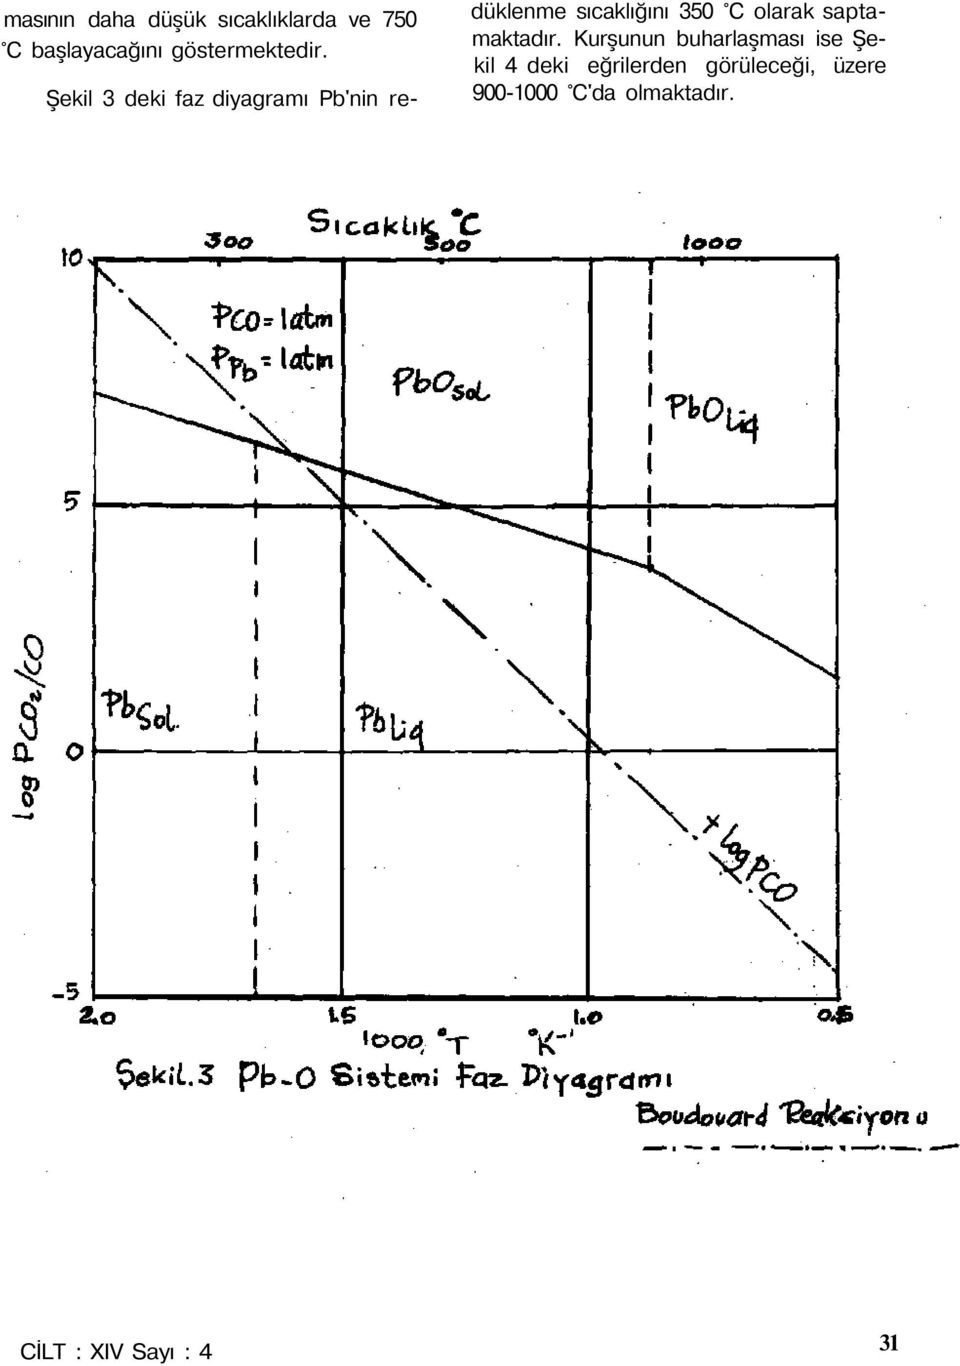 Şekil 3 deki faz diyagramı Pb'nin redüklenme sıcaklığını 35 C